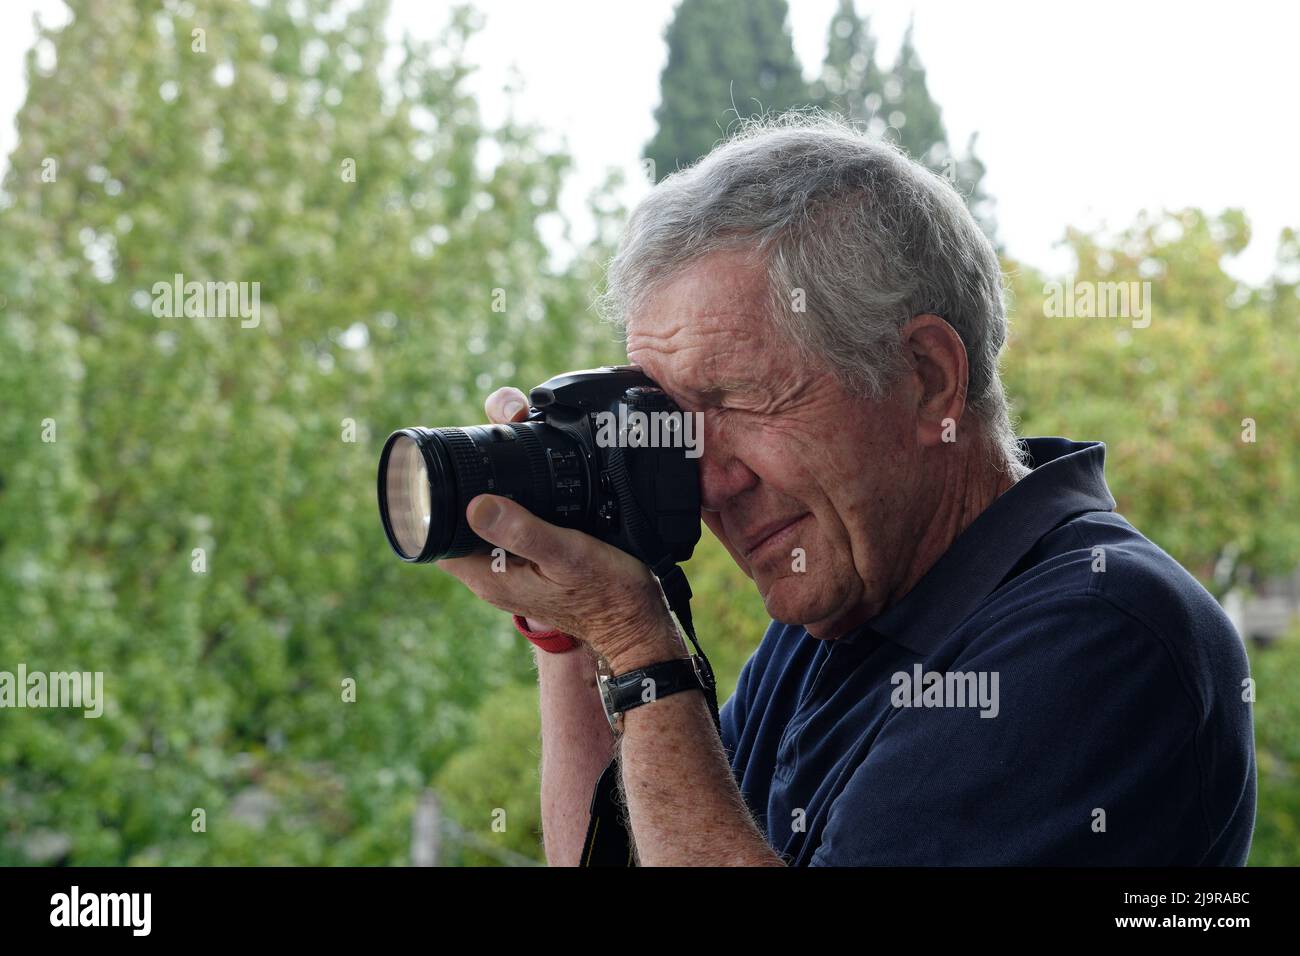 Photographe masculin âgé utilisant un appareil photo reflex à objectif unique tenu à l'œil droit. Vue du côté gauche. Chemise bleu foncé et arrière-plan d'arbre vert flou. Banque D'Images